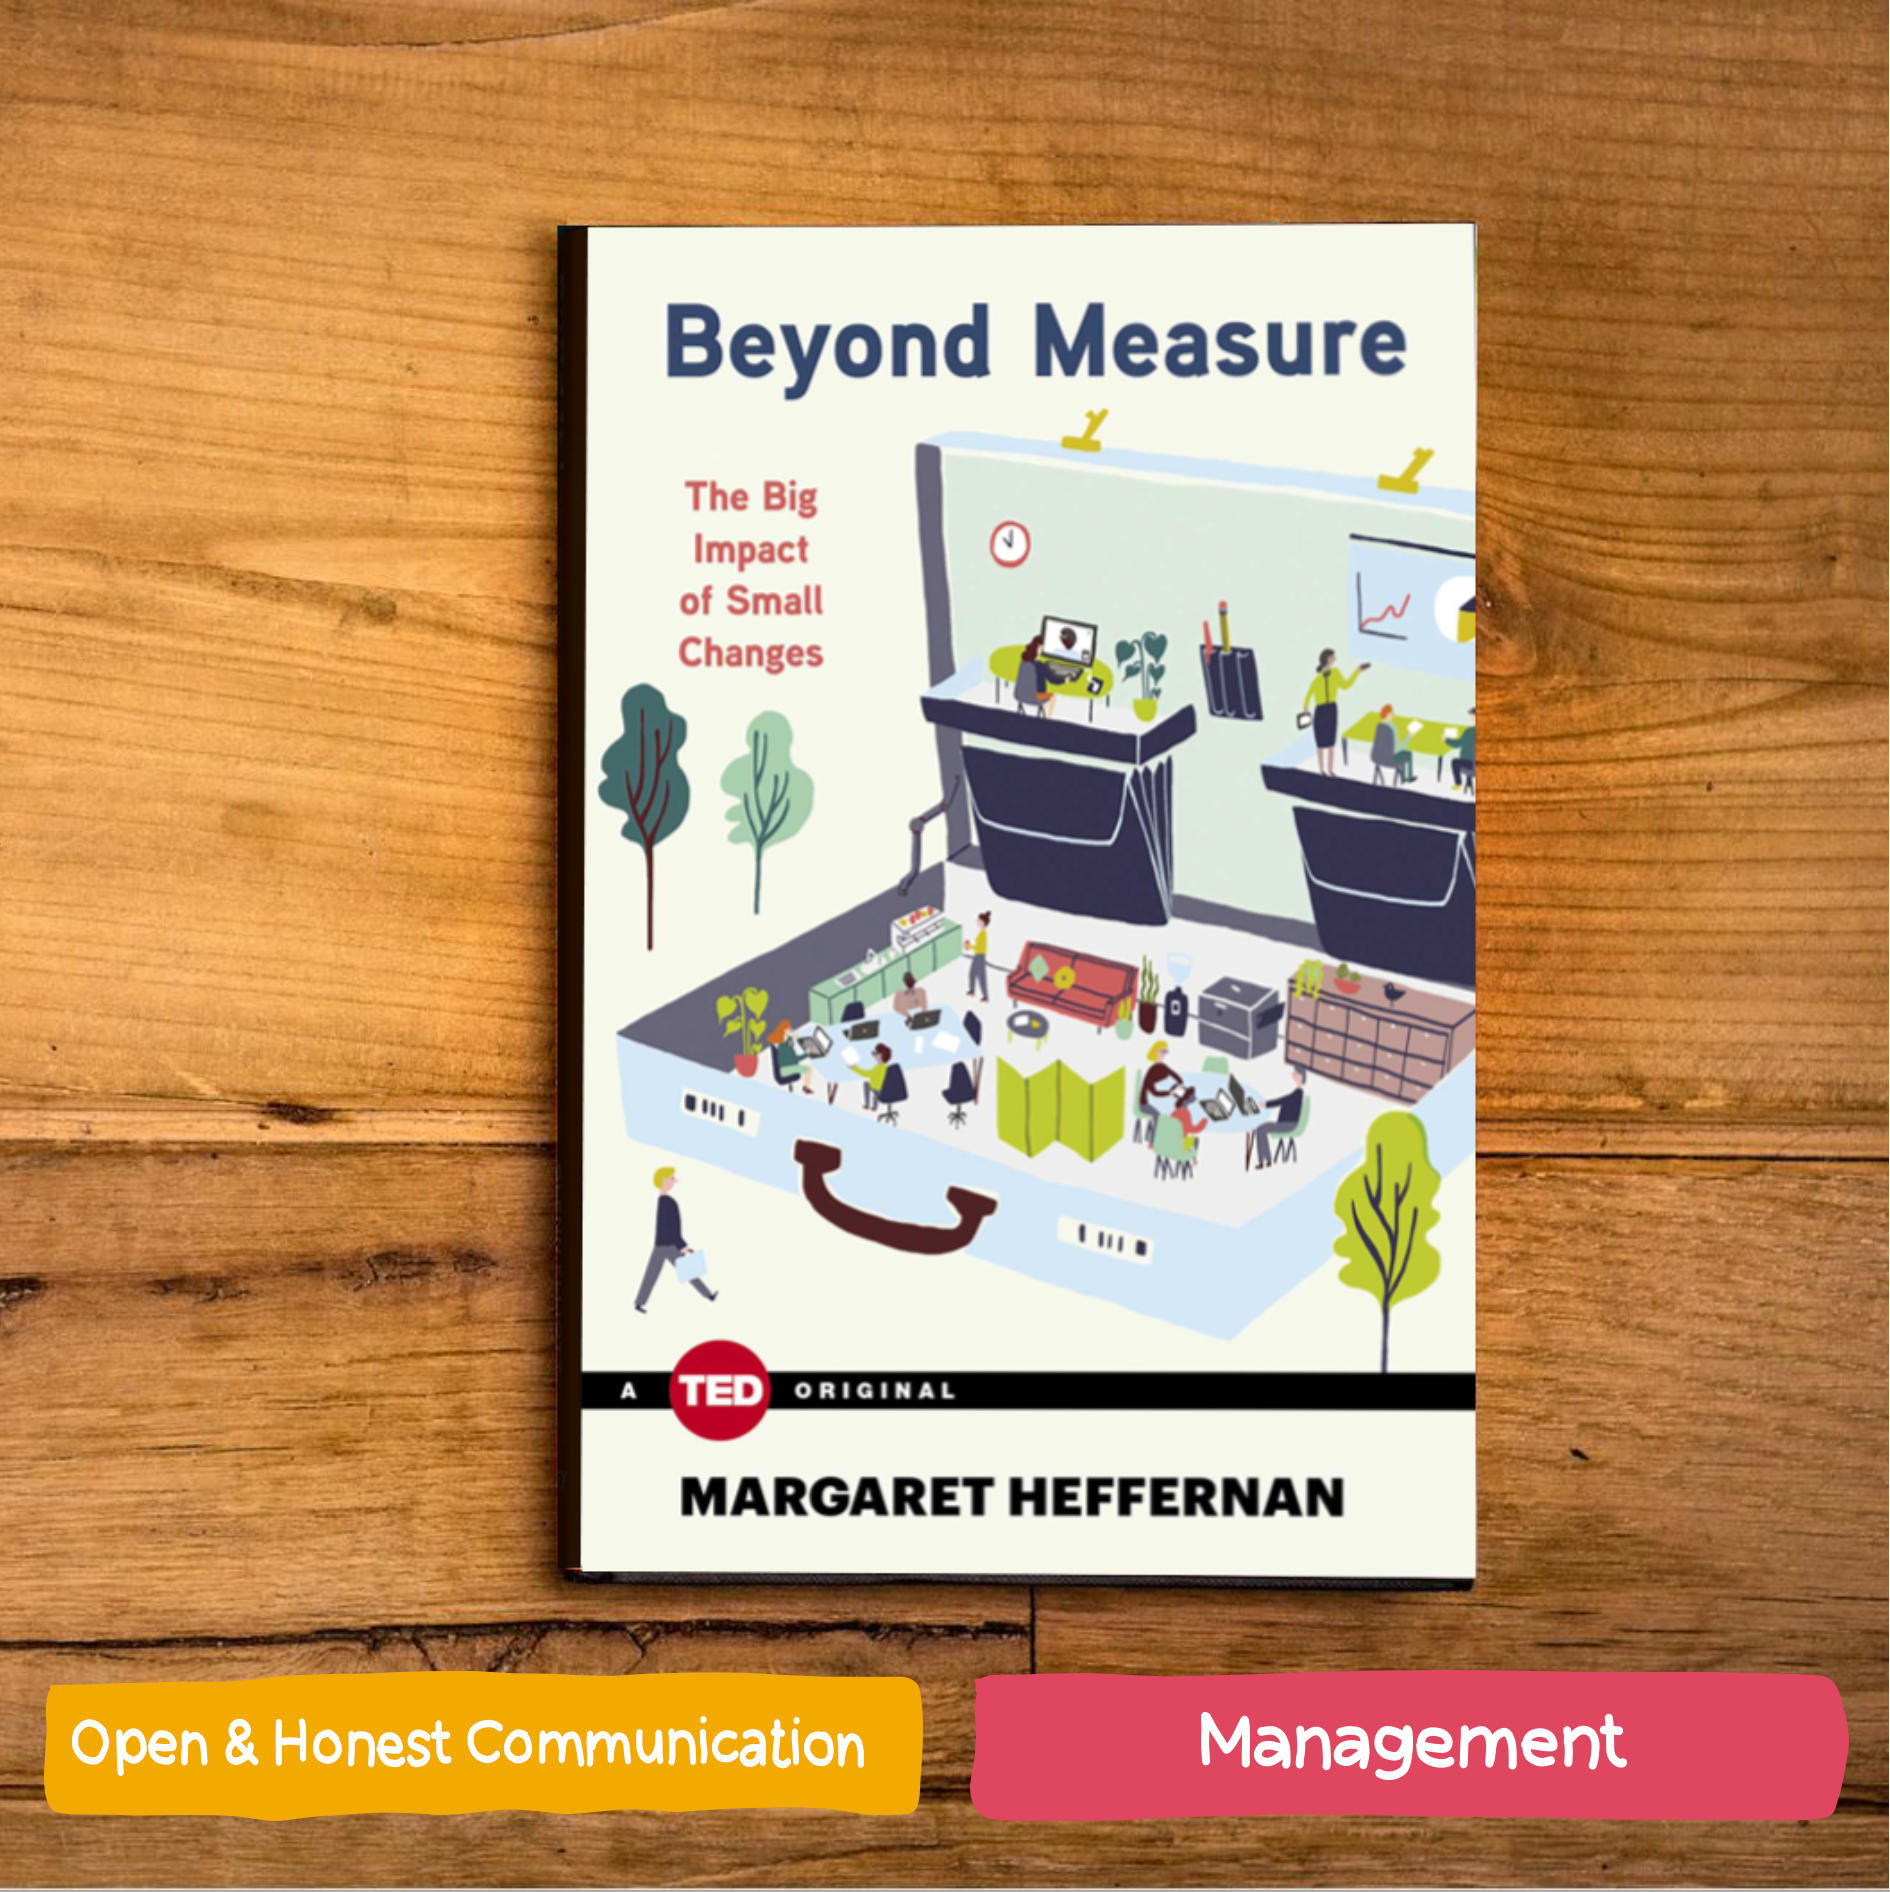 Beyond Measure by Margaret Heffernan